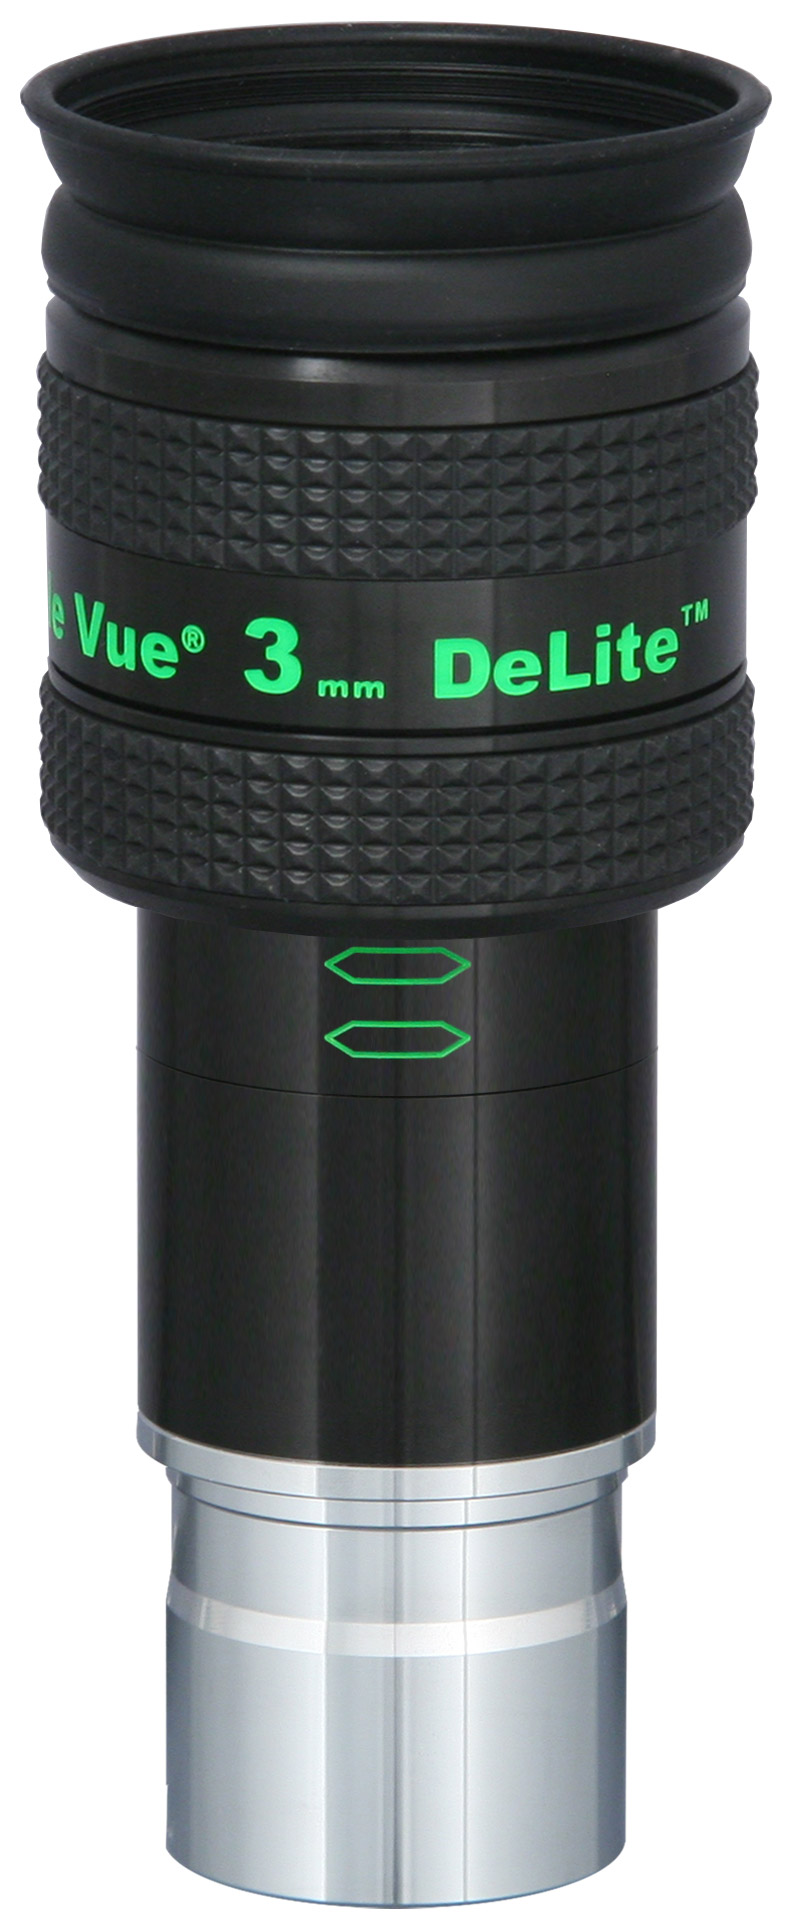 DeLite 3mm Eyepiece